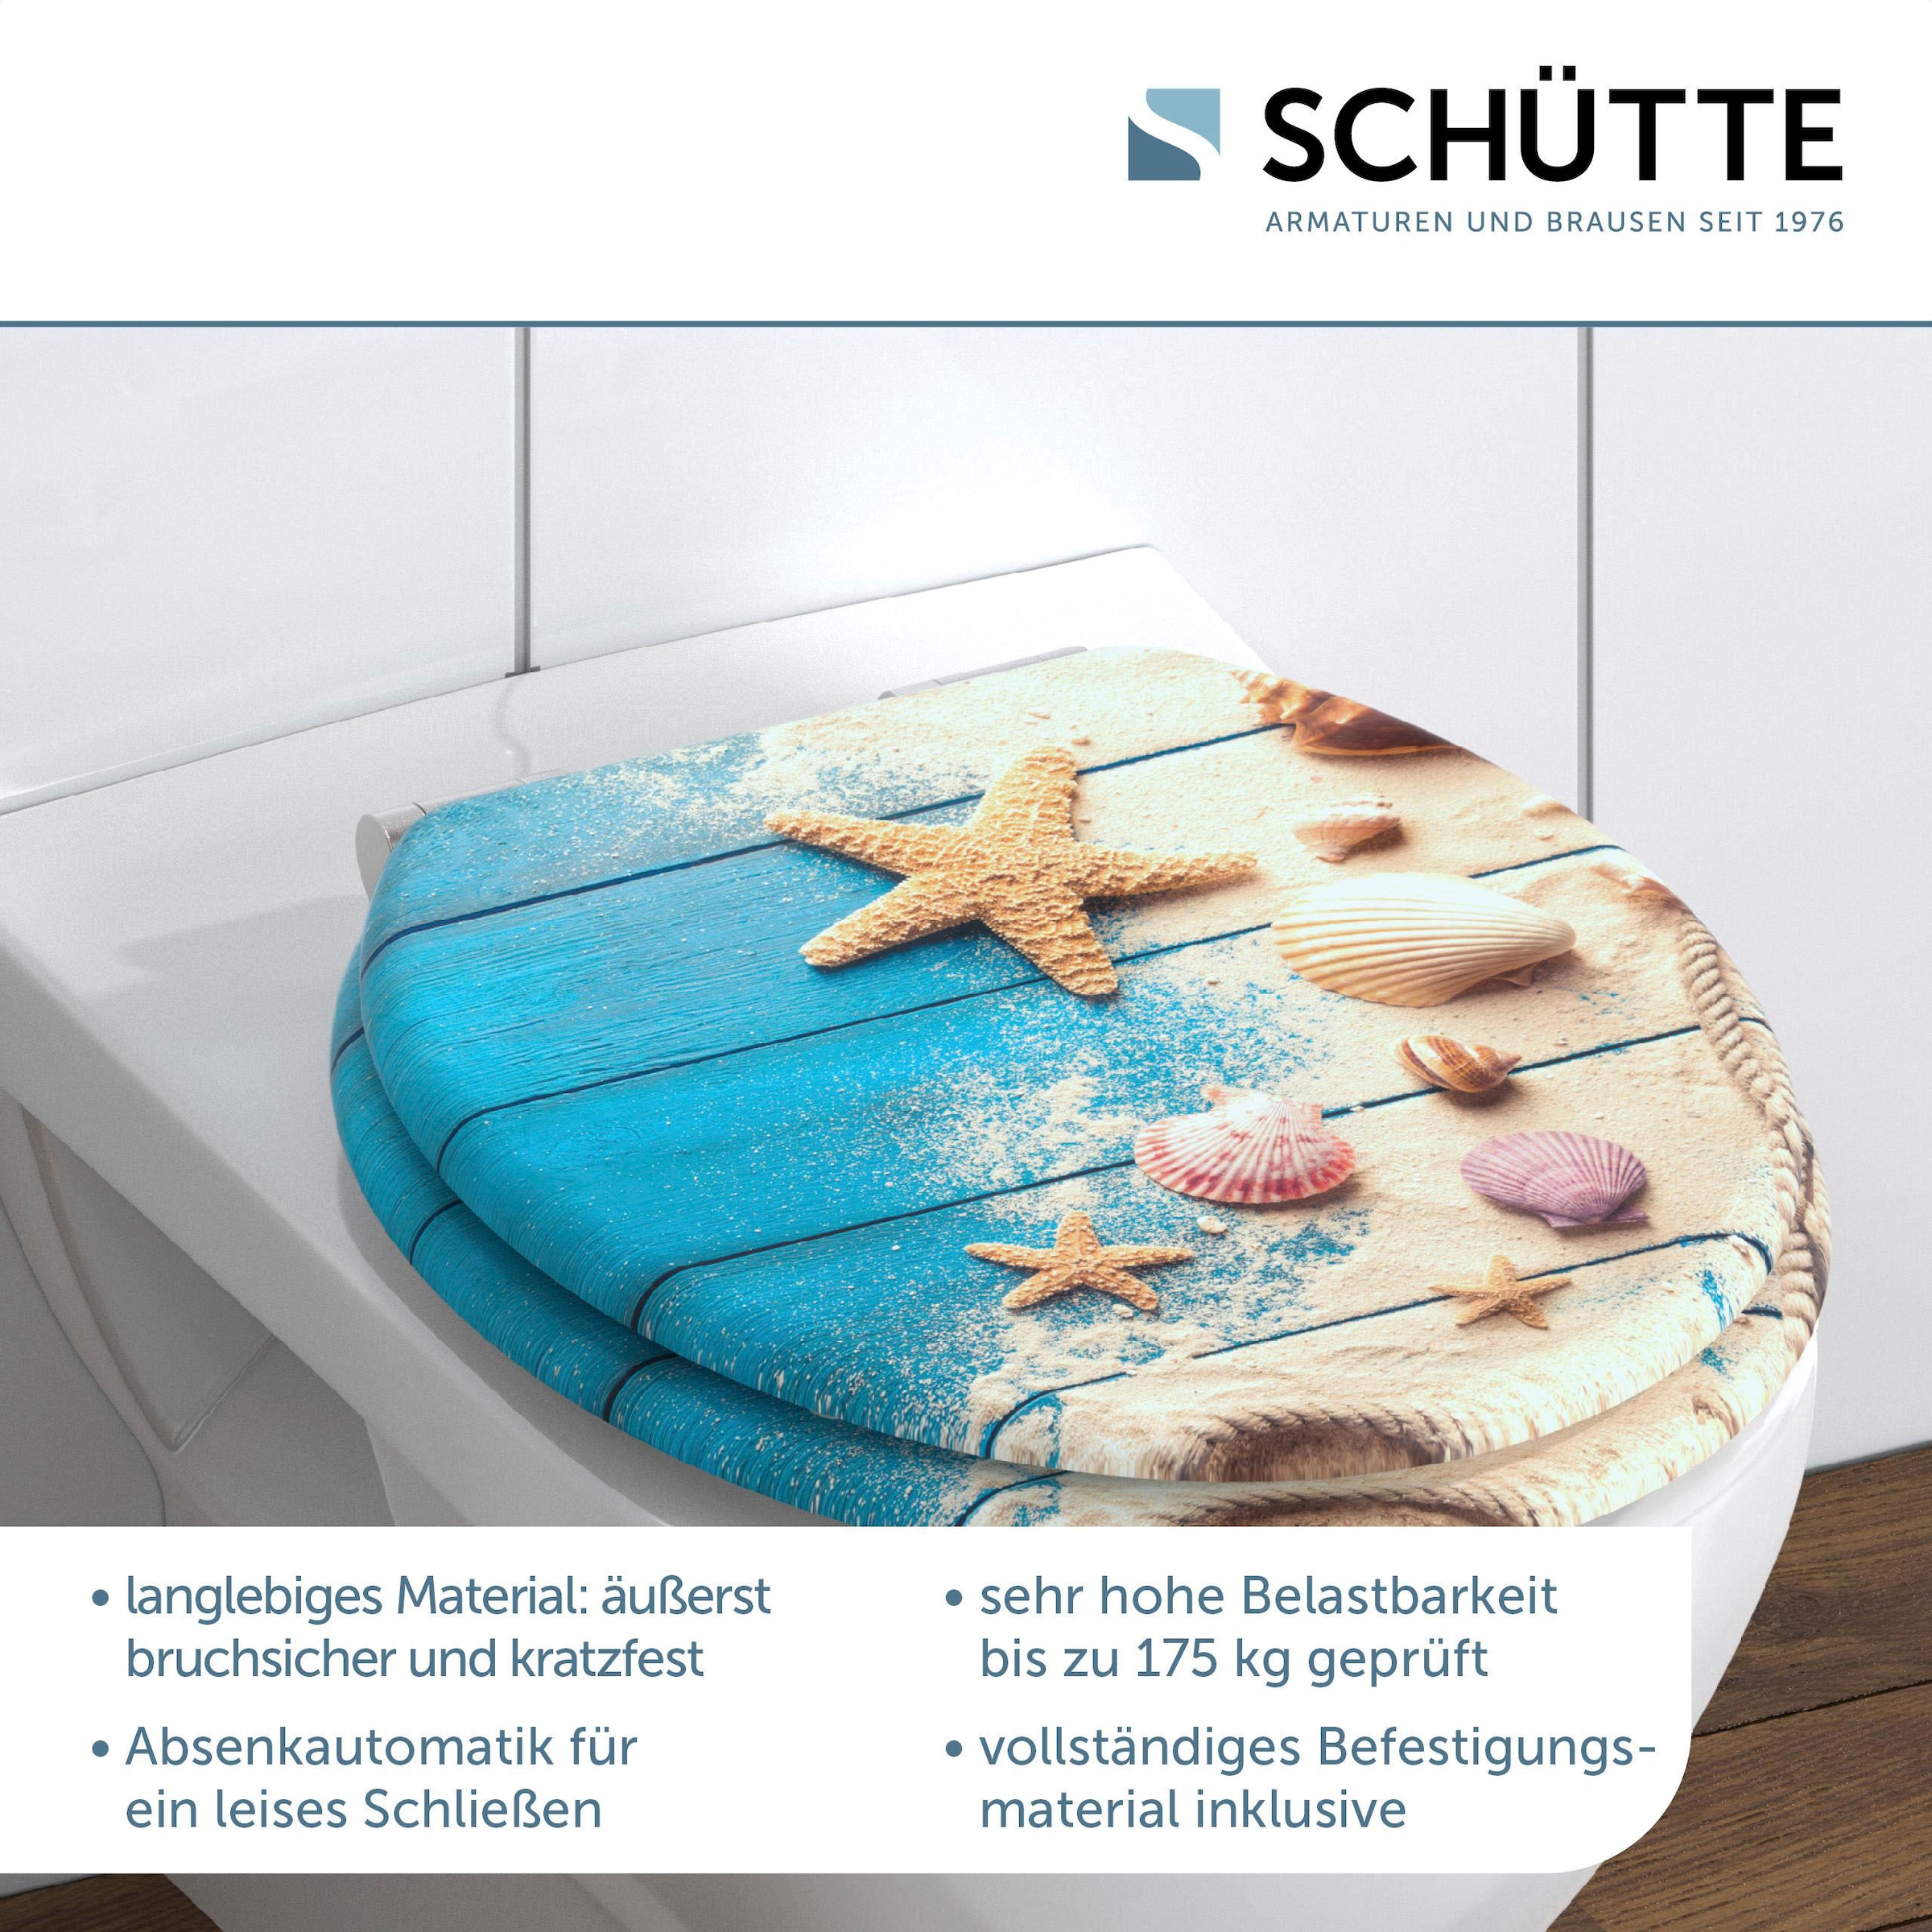 Schütte WC-Sitz »BEACH AND WOOD«, Toilettendeckel, mit Absenkautomatik